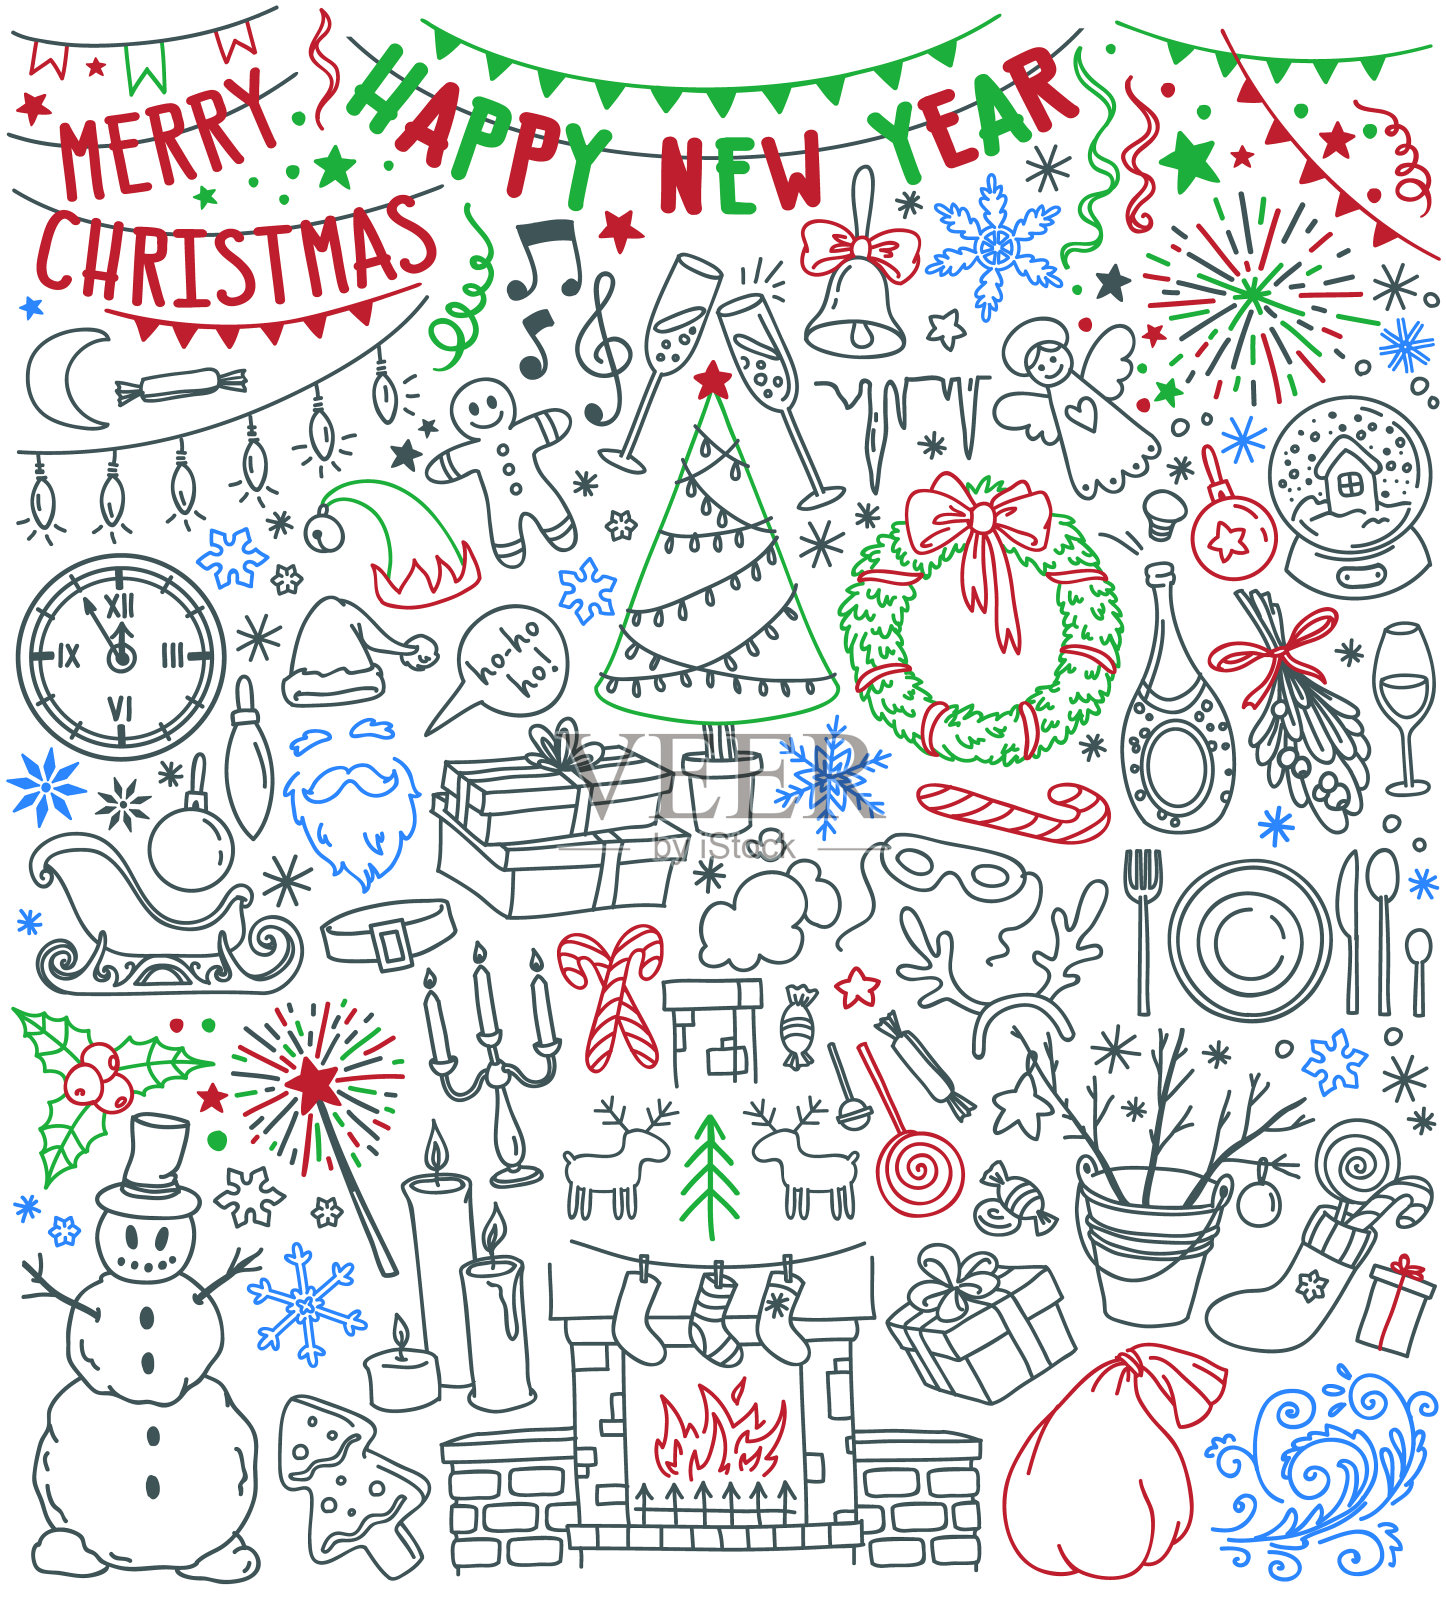 新年快乐，圣诞快乐的涂鸦集。圣诞树，壁炉长袜，礼品盒，雪花，圣诞花环，派对装饰。插画图片素材